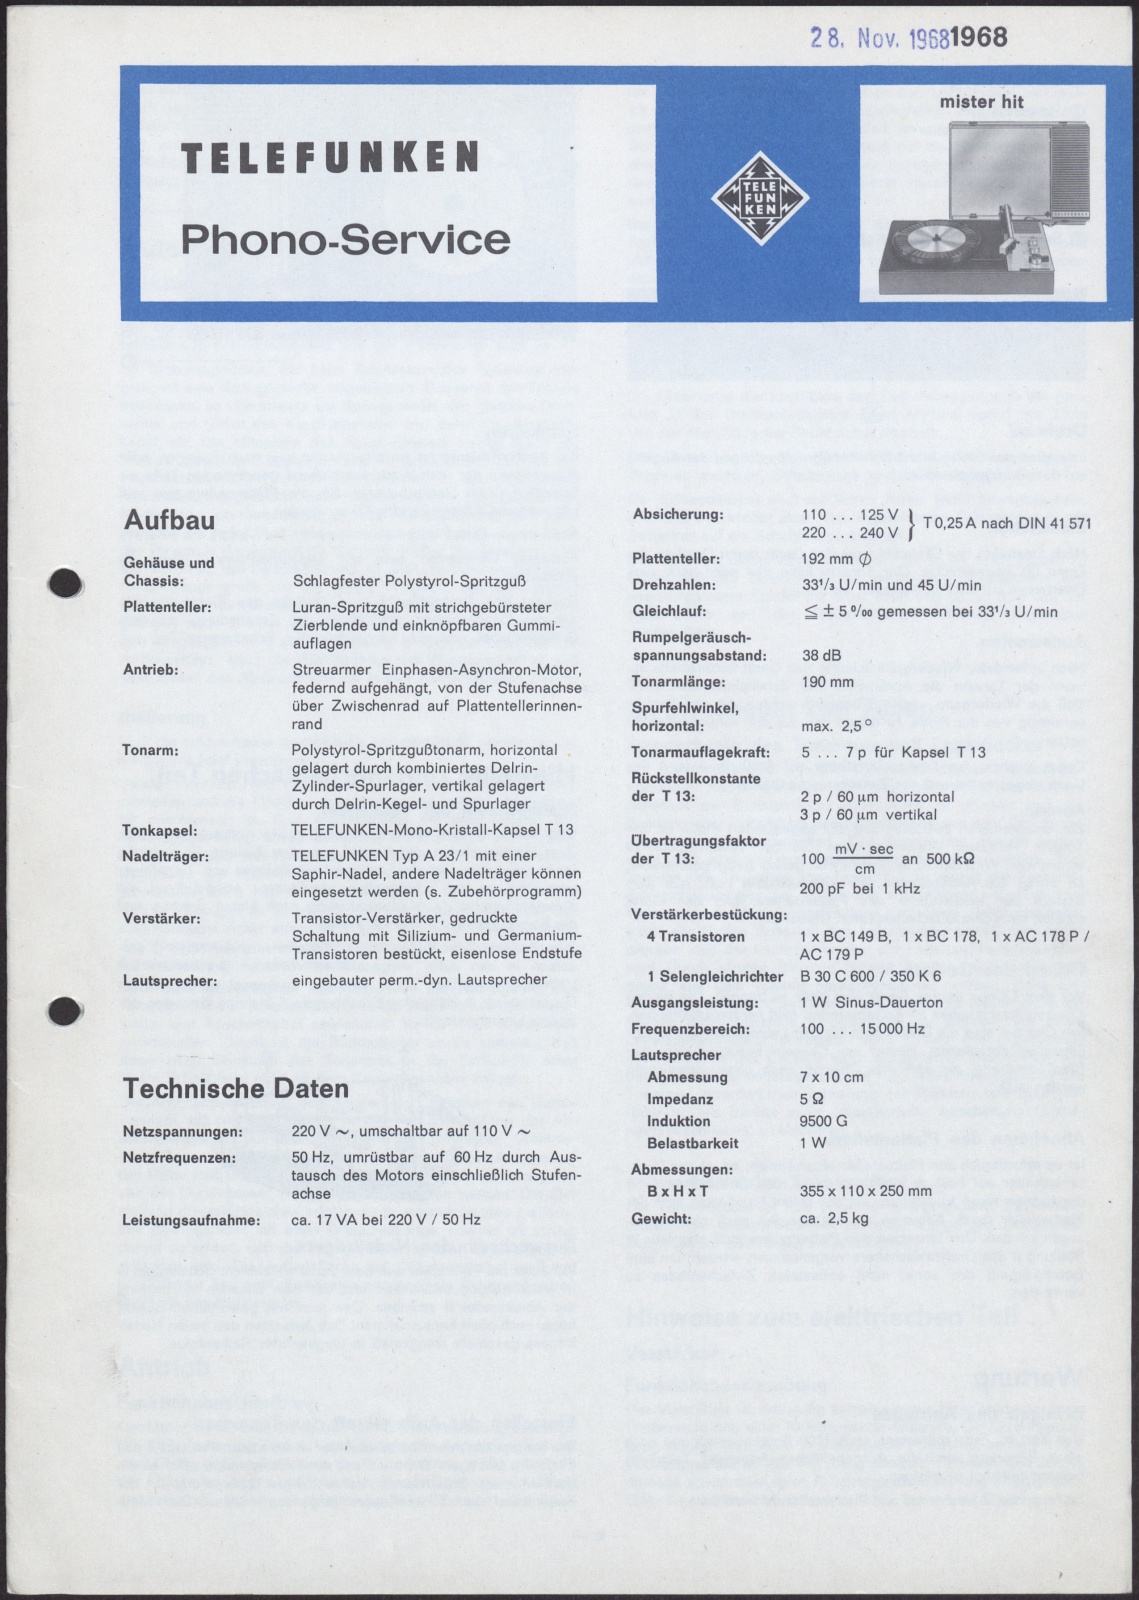 Bedienungsanleitung: Telefunken Phono-Service mister hit und Zusatzblatt Phono-Service mister hit 70 (Stiftung Deutsches Technikmuseum Berlin CC0)